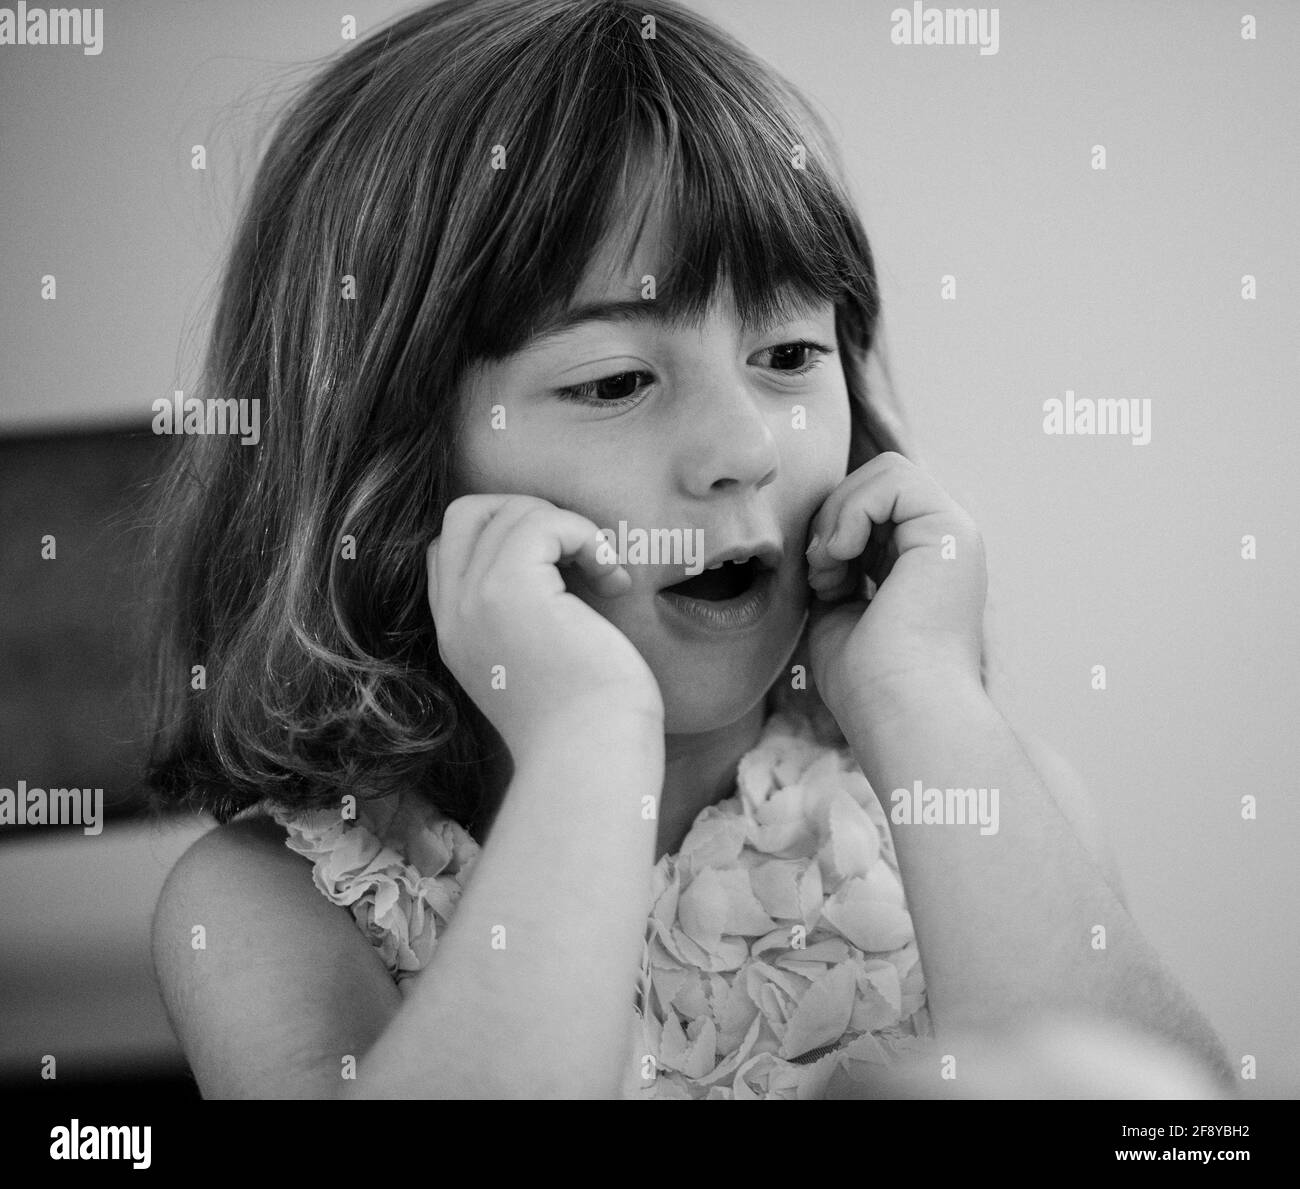 Retrato de niña en blanco y negro Foto de stock